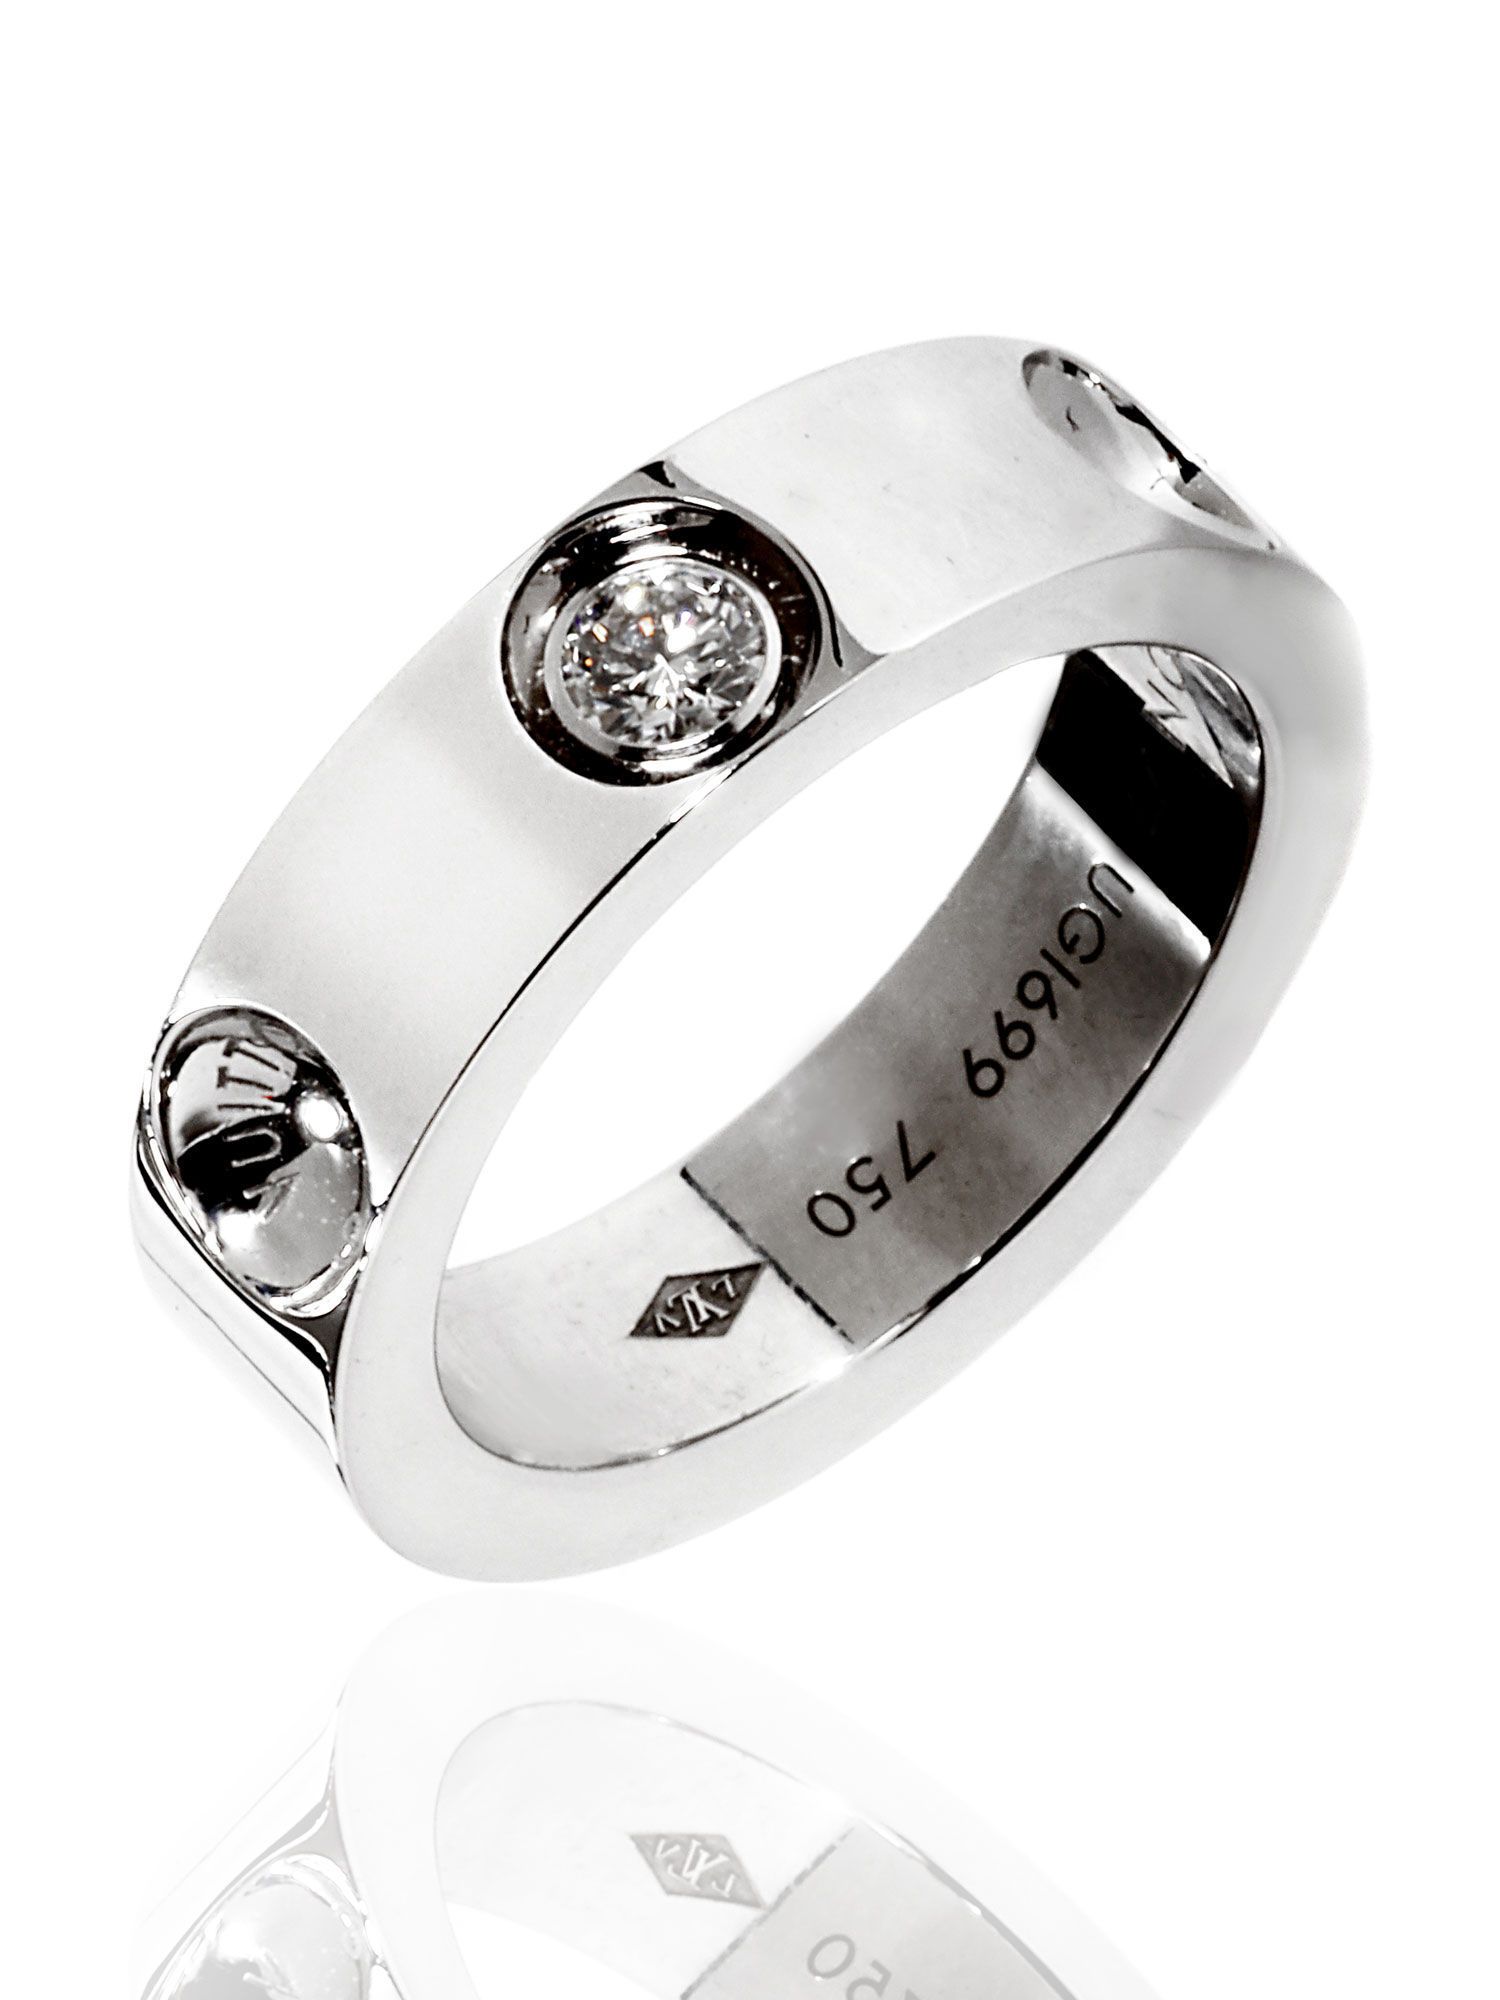 Louis Vuitton Empreinte Diamond Ring 18k White Gold